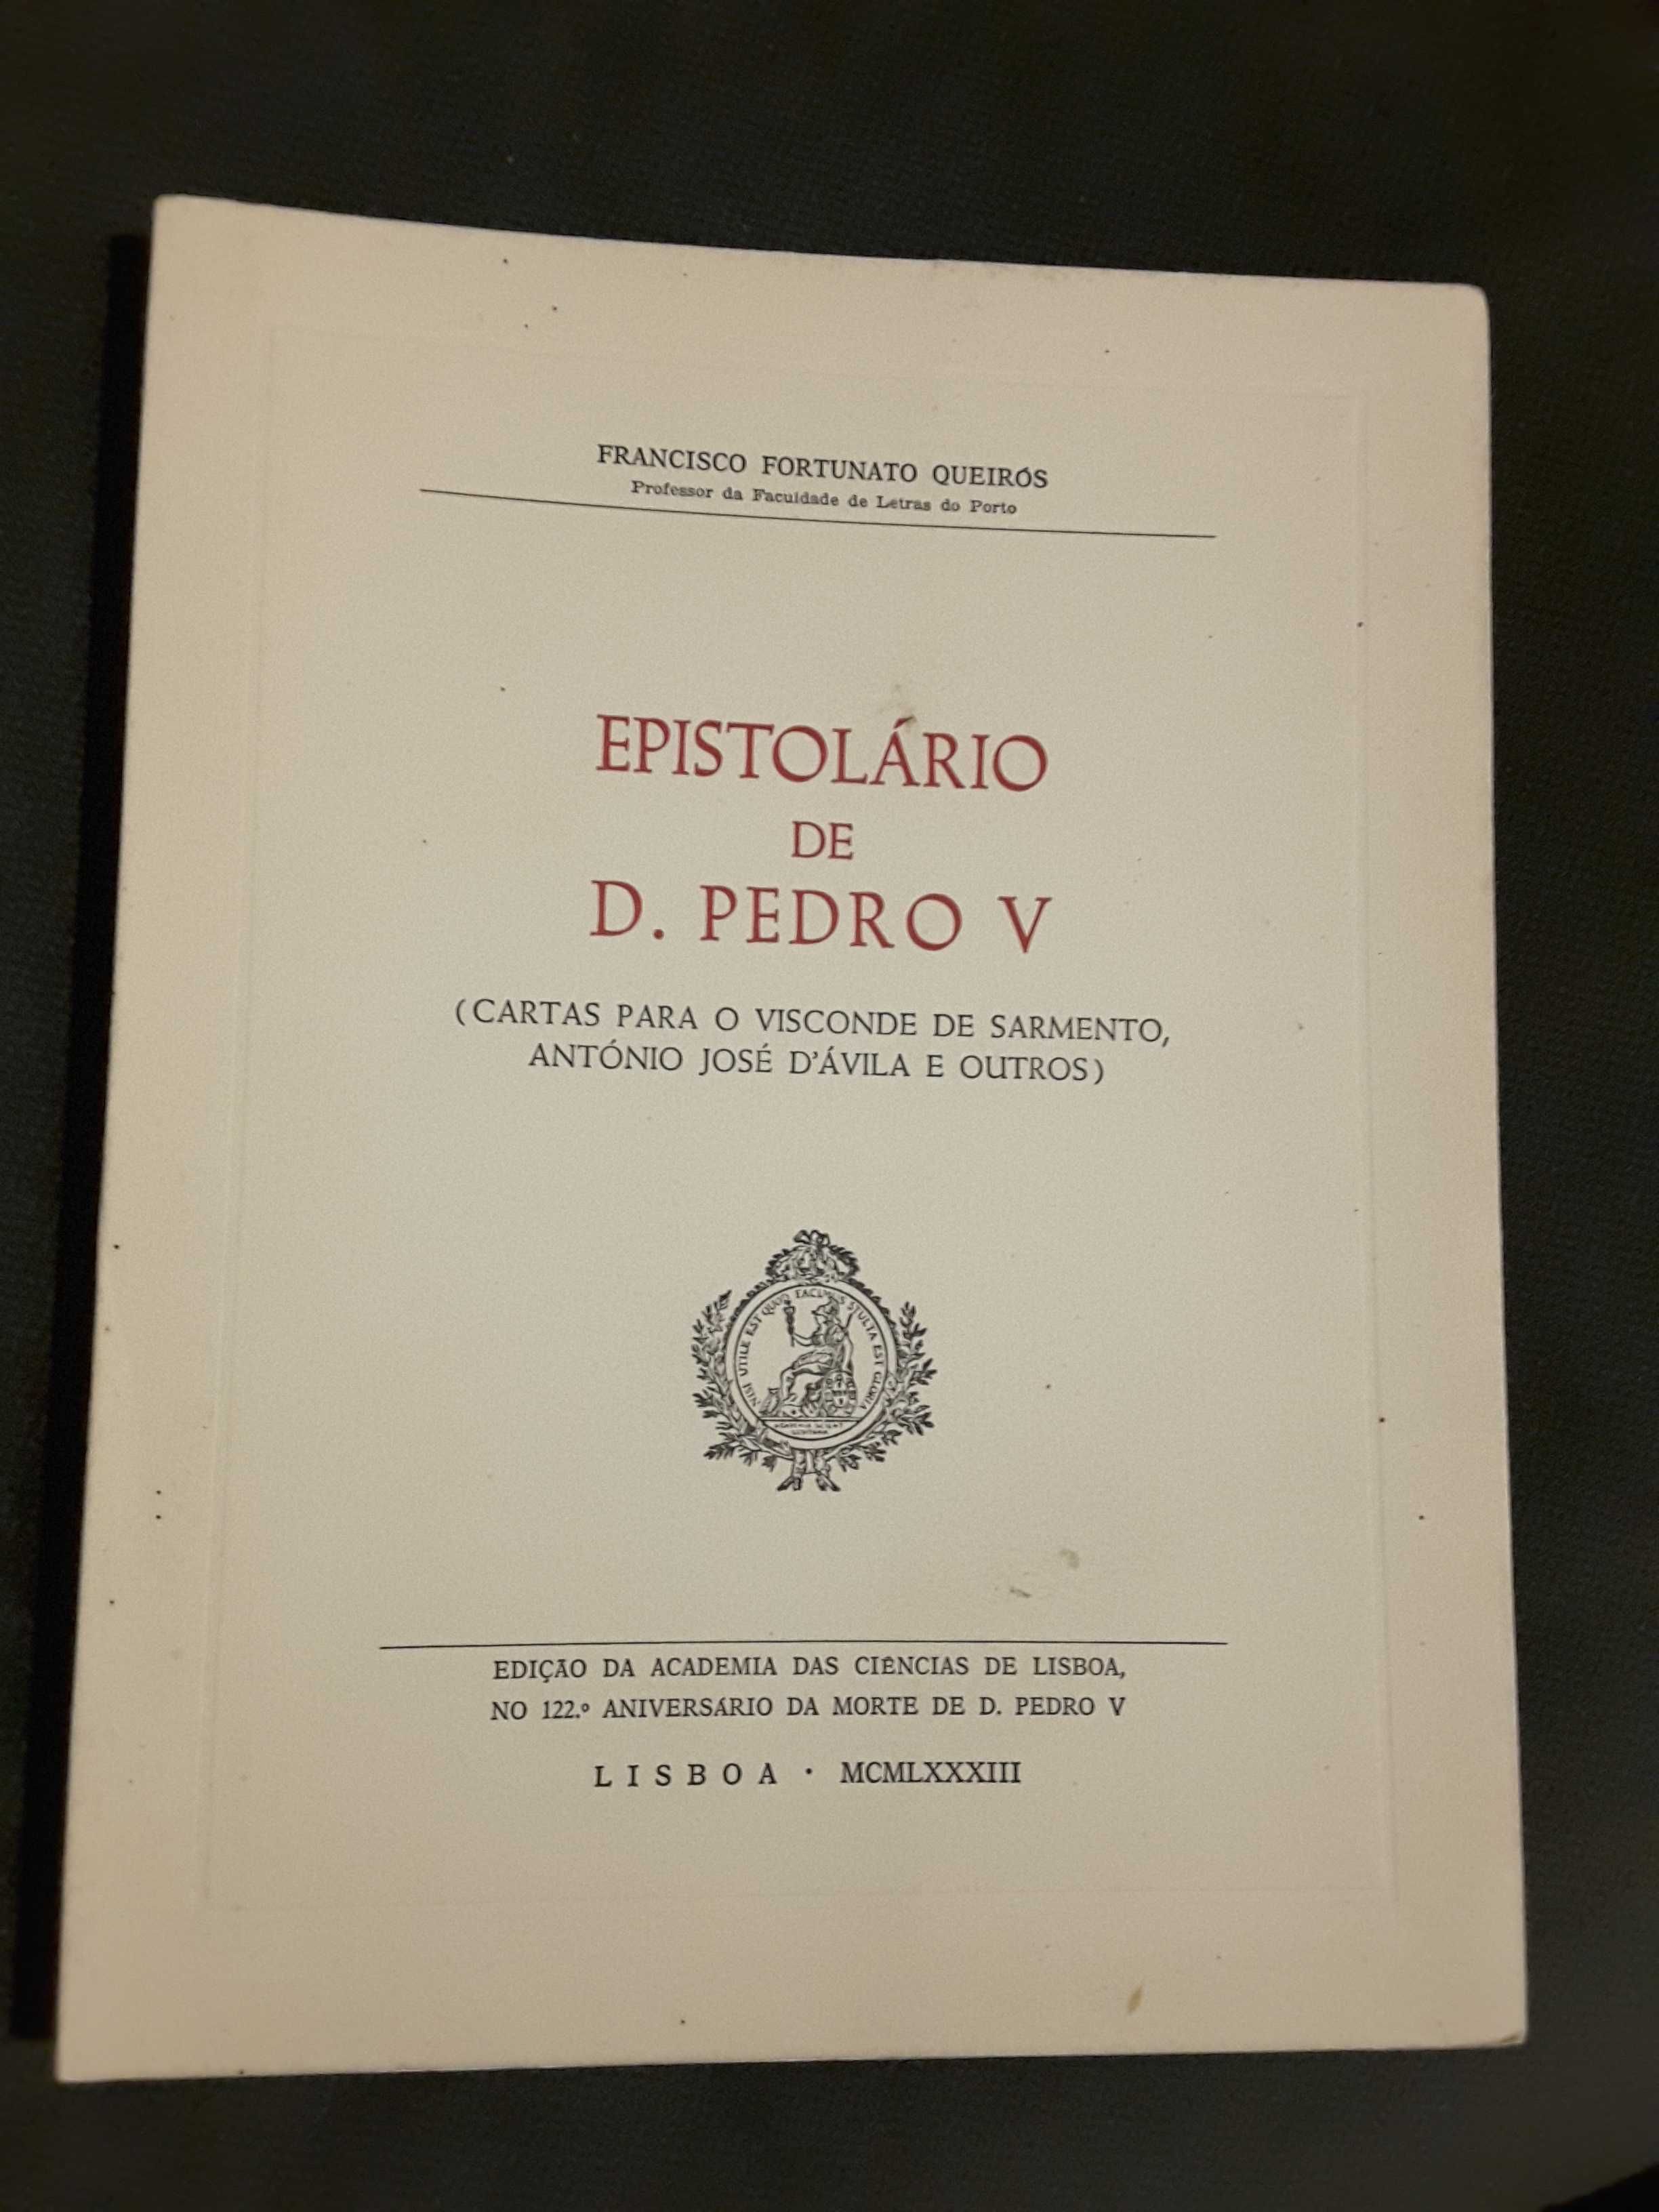 Memórias do Marquês de Fronteira / Epistolário de D. Pedro V